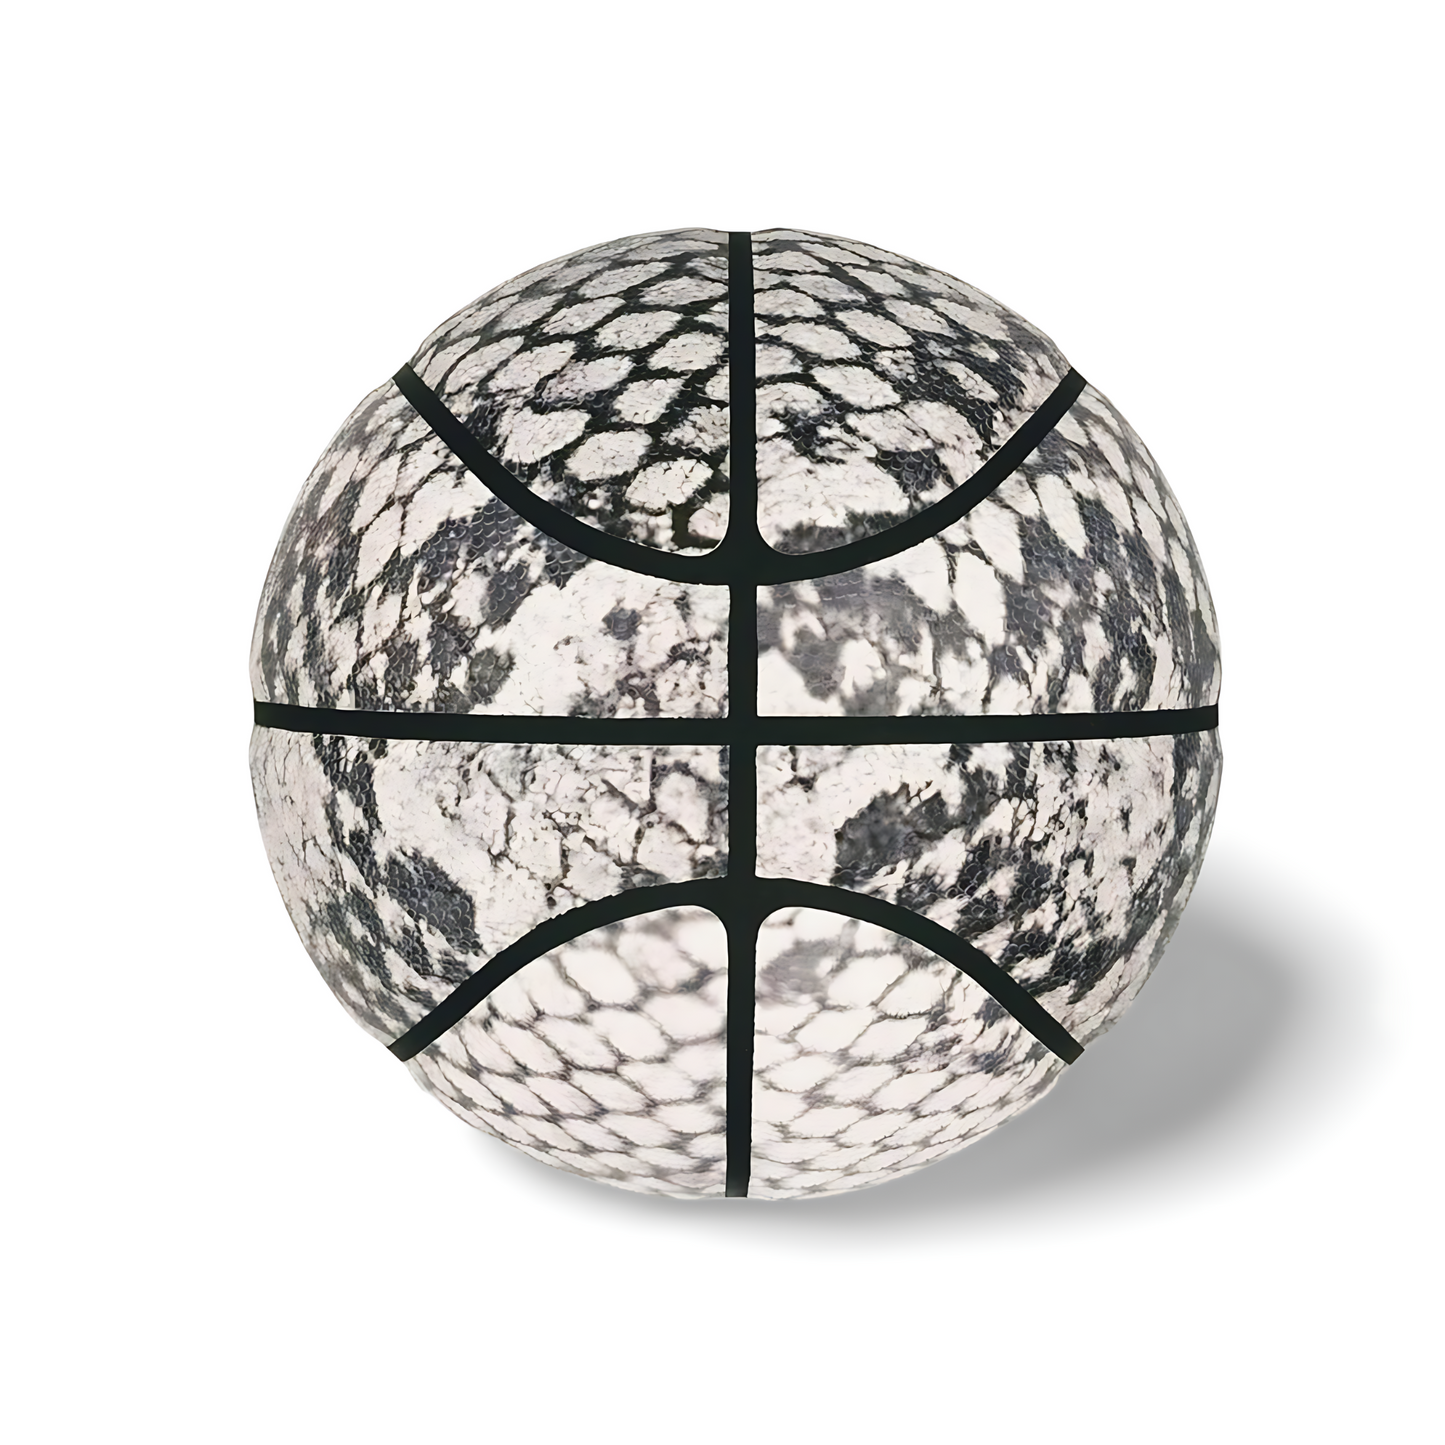 Ballon de basket imprimé python Gris